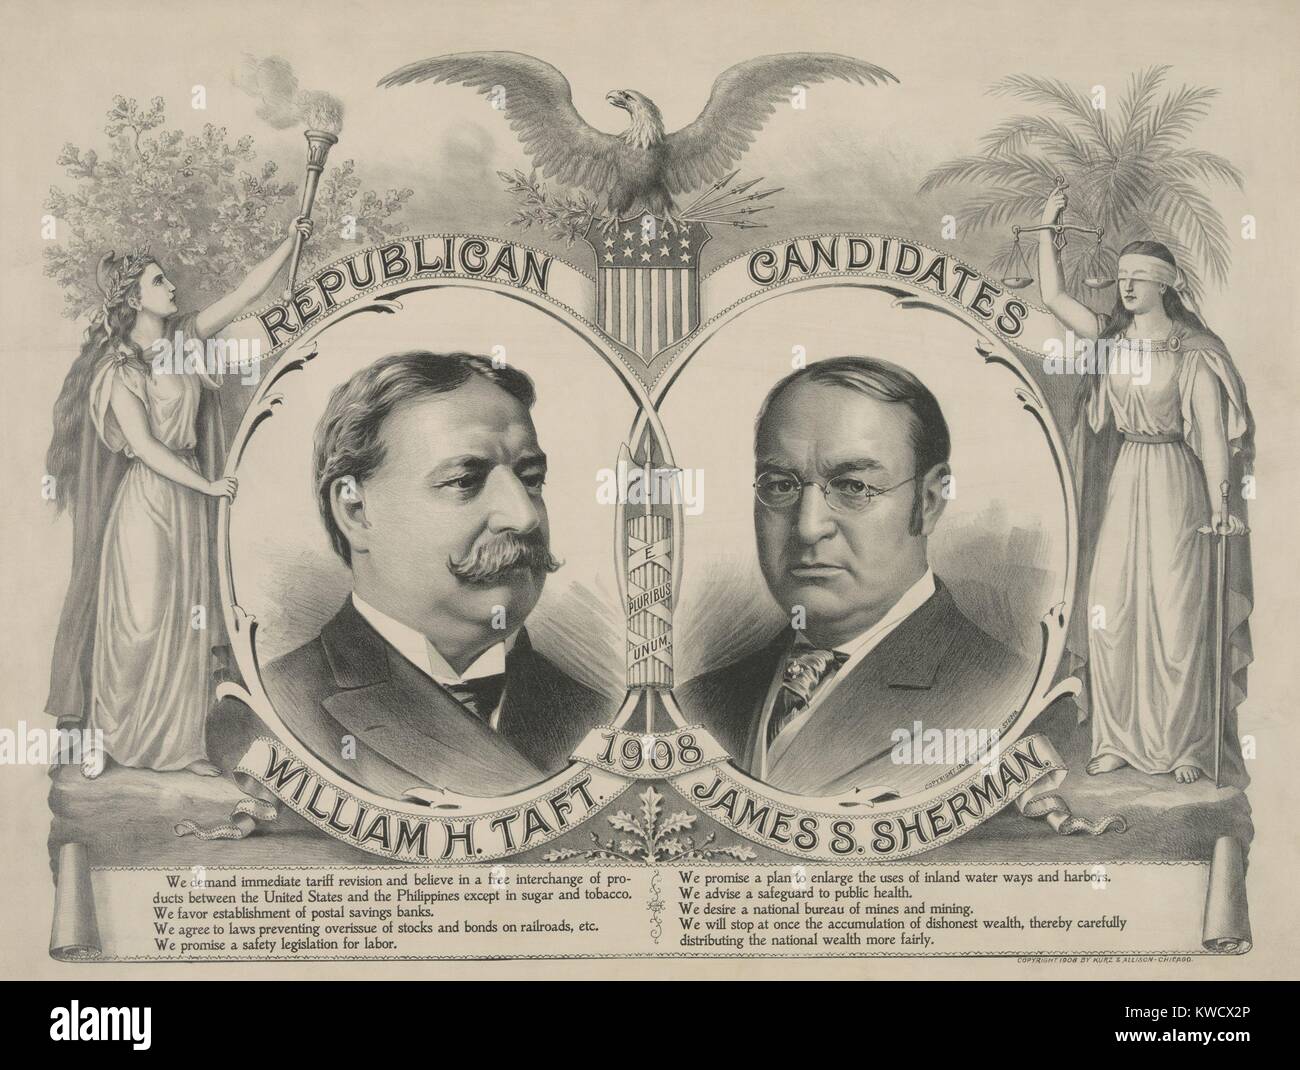 Affiche de campagne pour les candidats républicains à l'élection présidentielle de 1908. Ci-dessous le portrait de William Howard Taft et John Sherman sont consolidés à partir de leur plate-forme modérée (BSLOC 2017 2 115) Banque D'Images